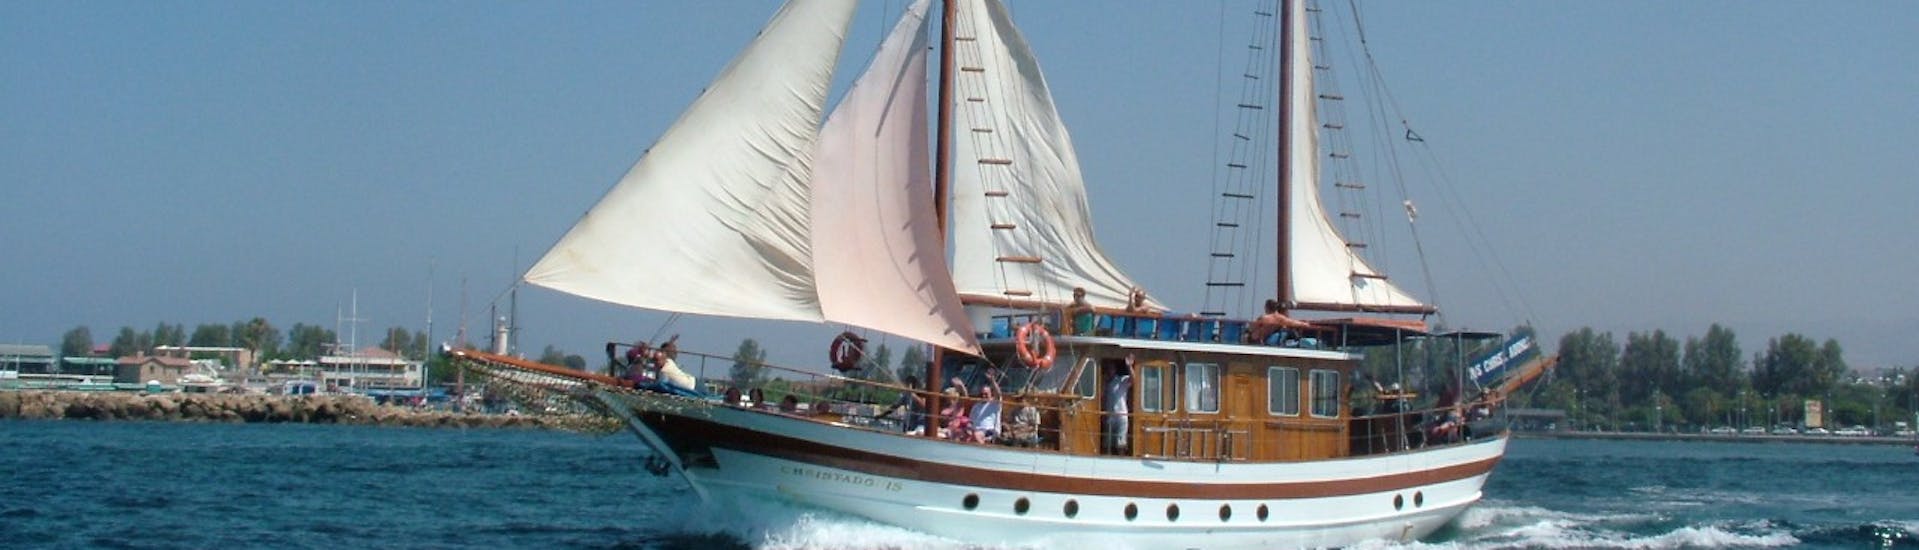 Gita in barca a vela da Pafo a Coral Bay (Peyia) con bagno in mare e visita turistica.